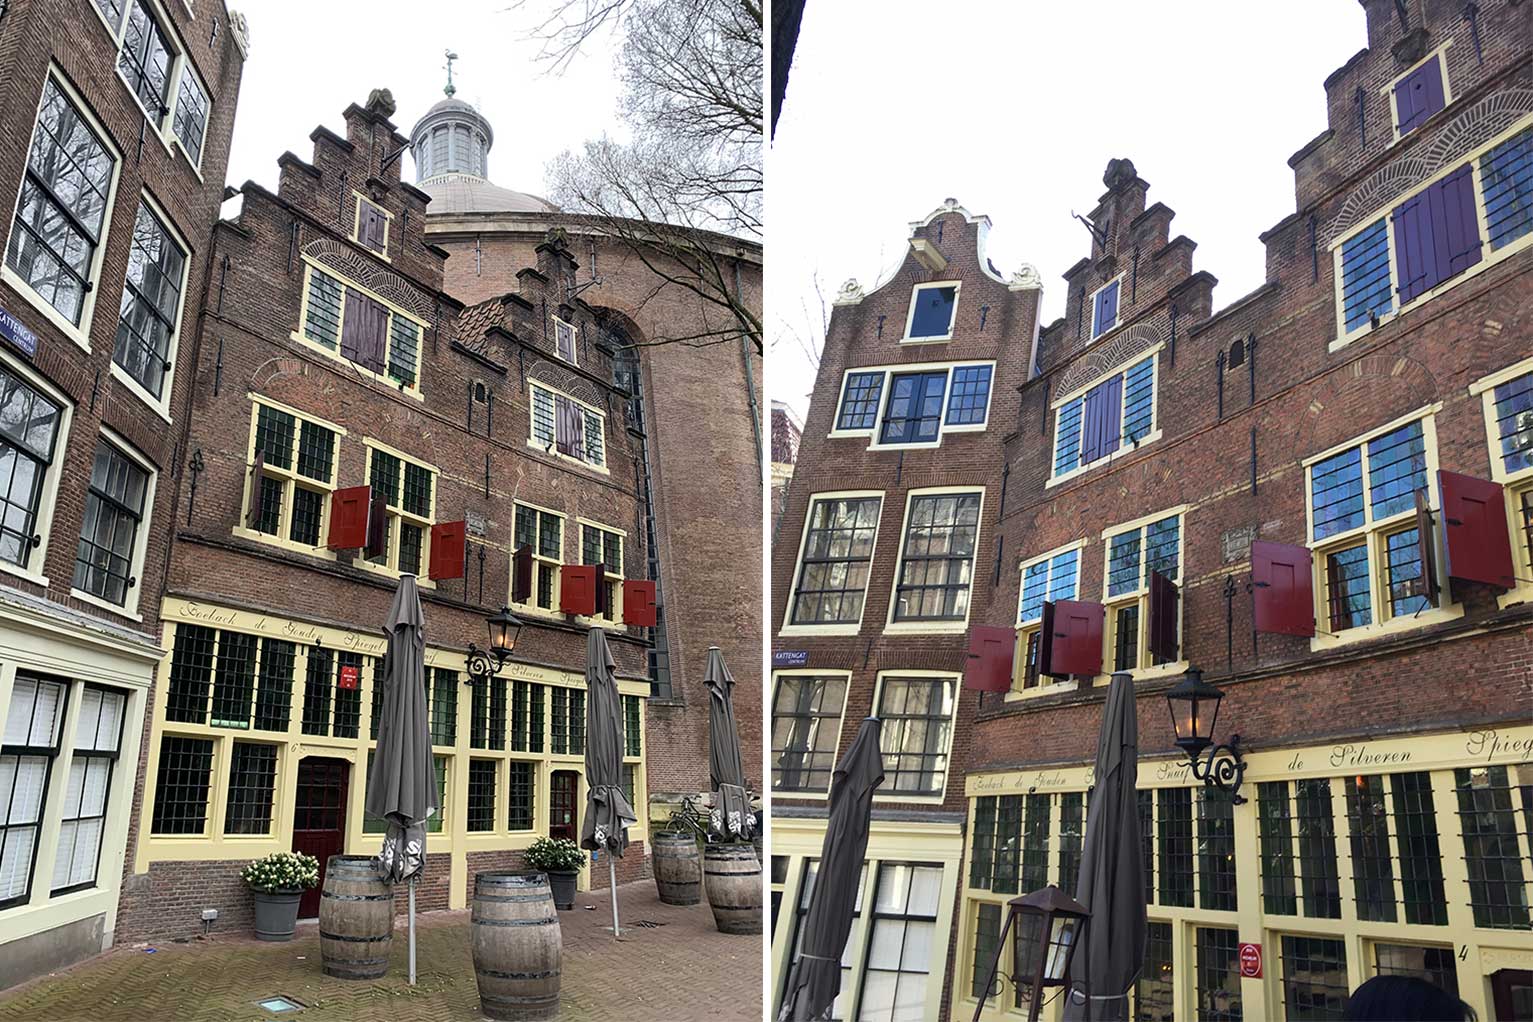 Kattengat 4-6, Amsterdam, with the Gouden Spiegel & the Silveren Spiegel 